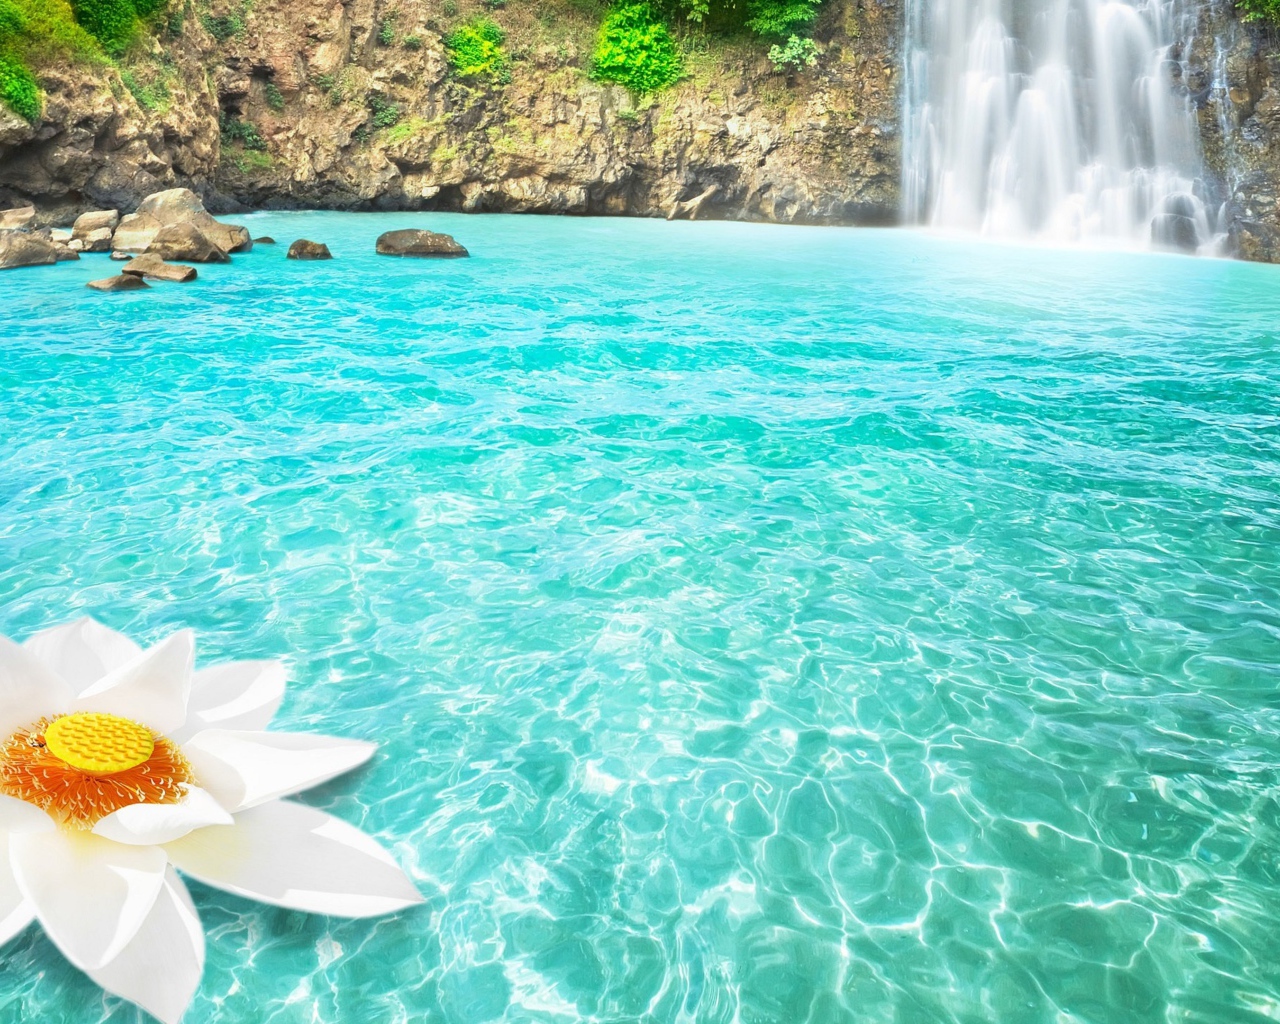 Большой белый цветок в голубой воде у водопада 